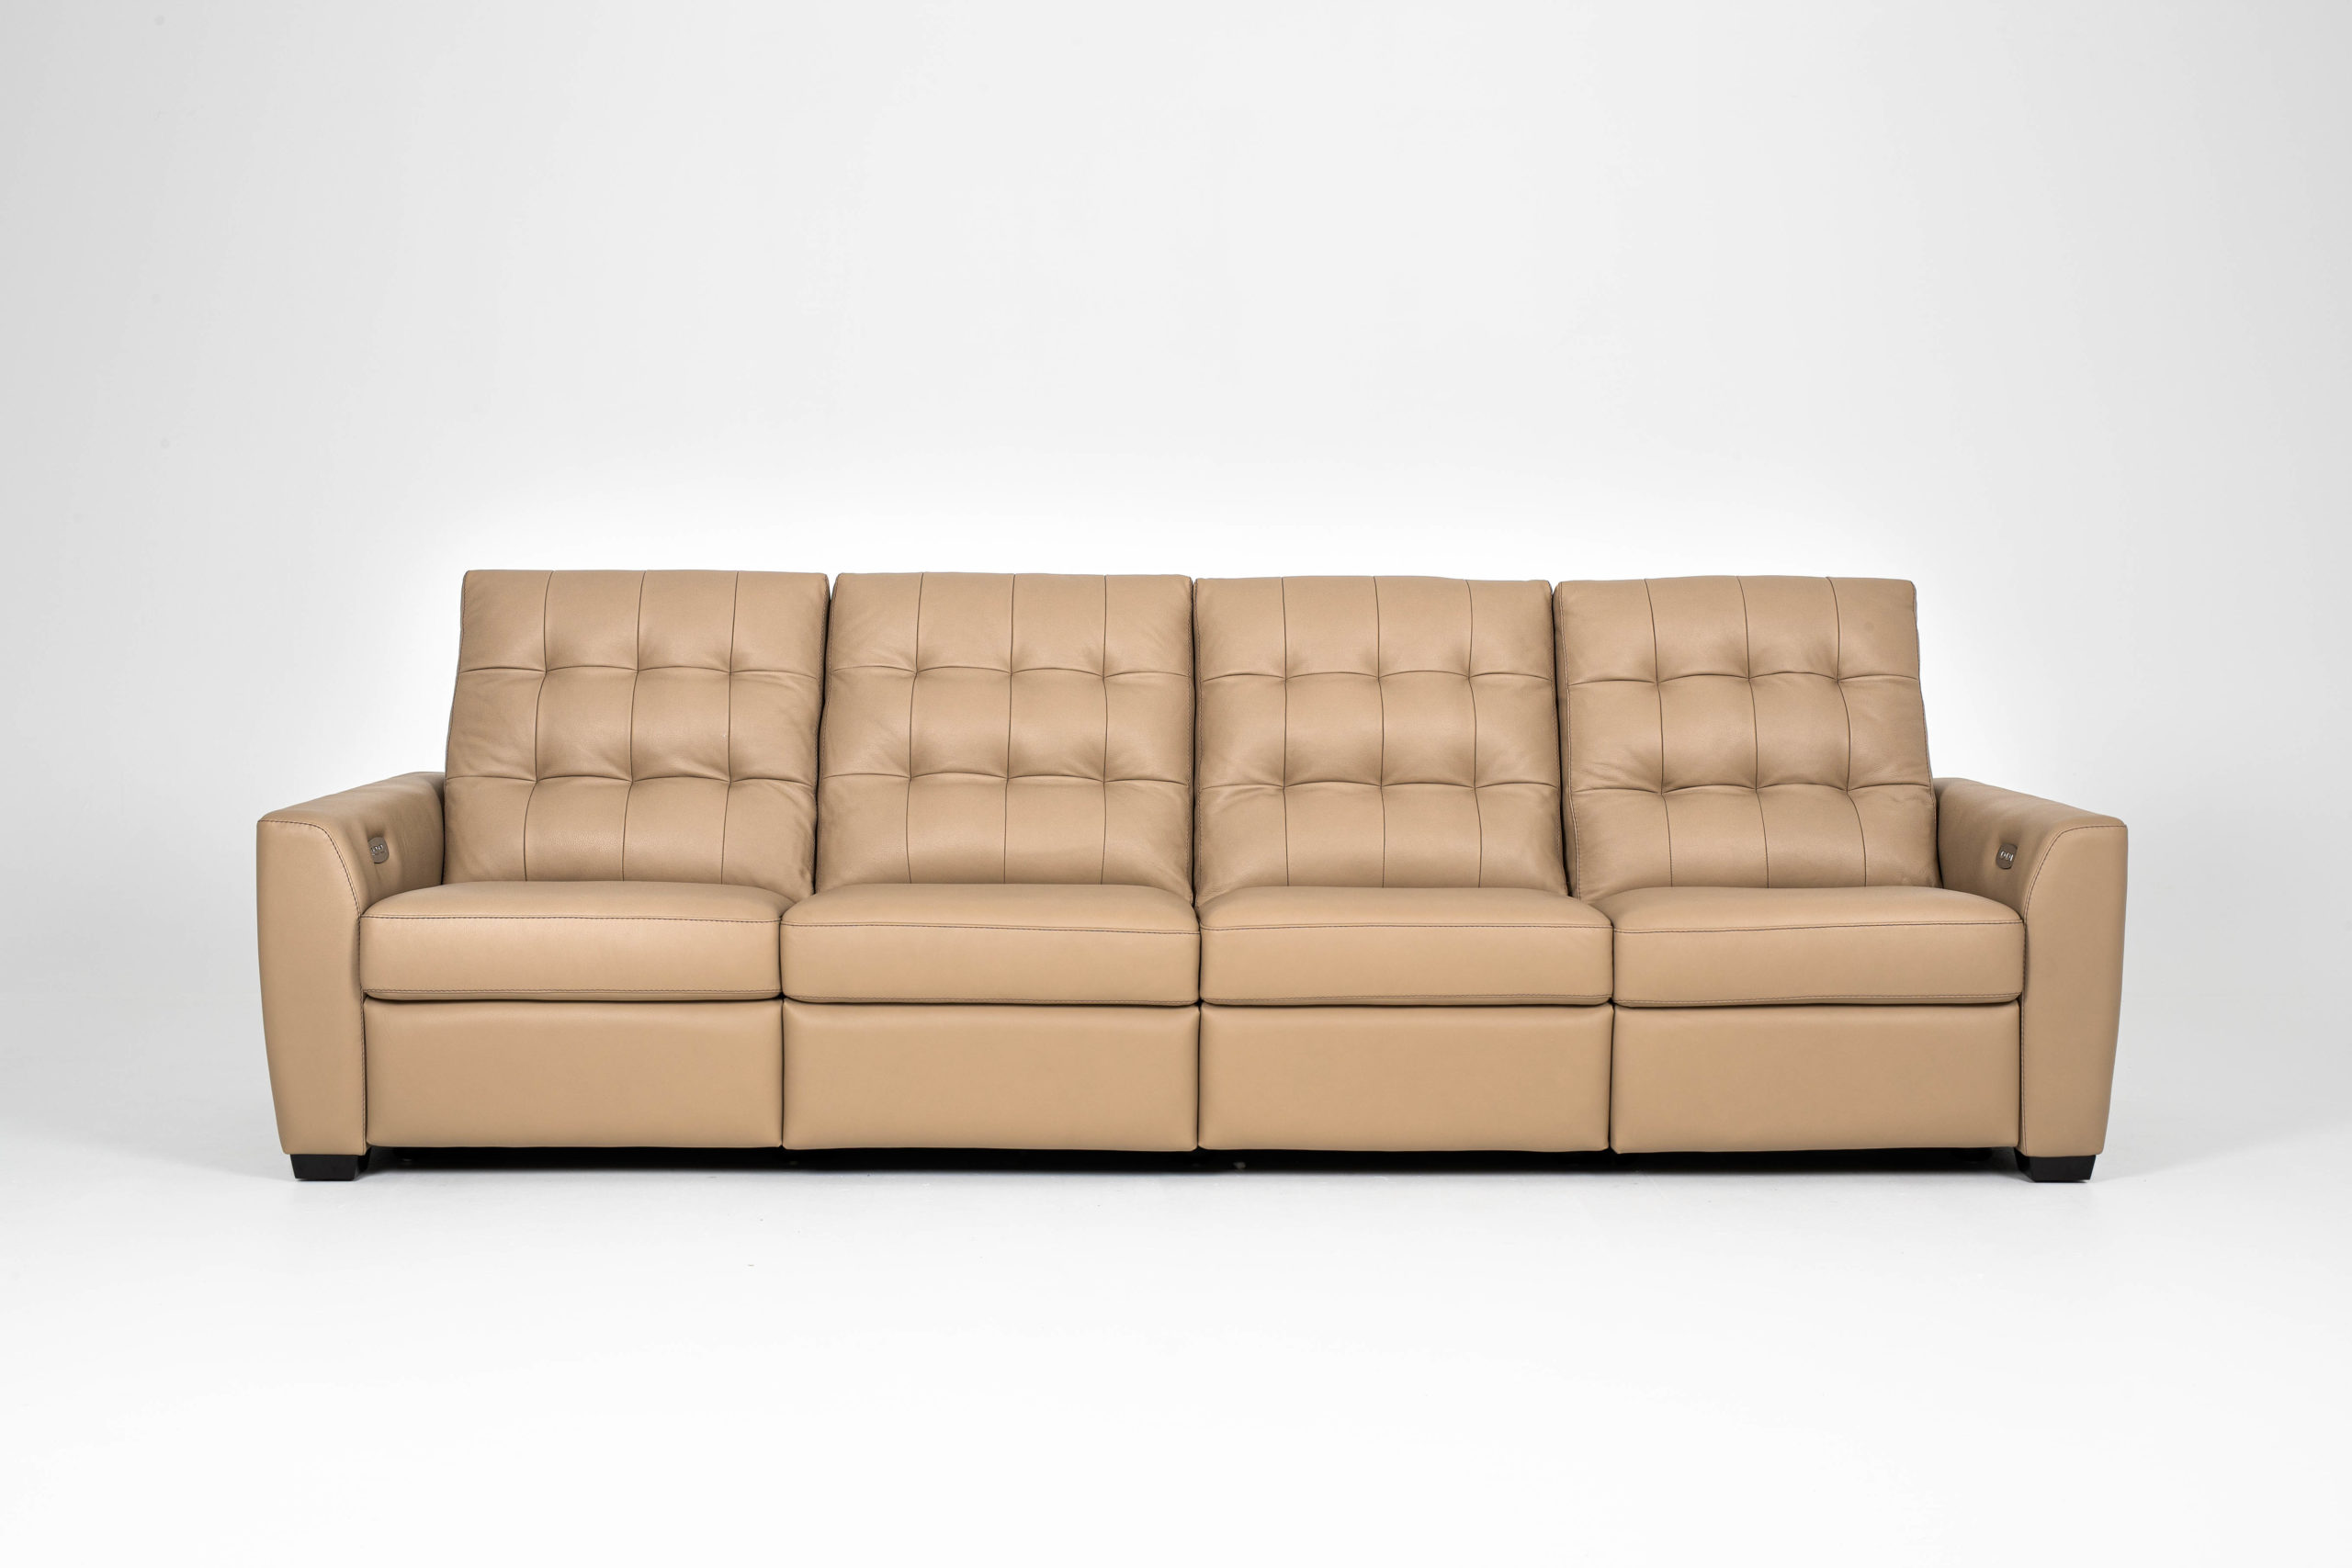 four seater leather sofa